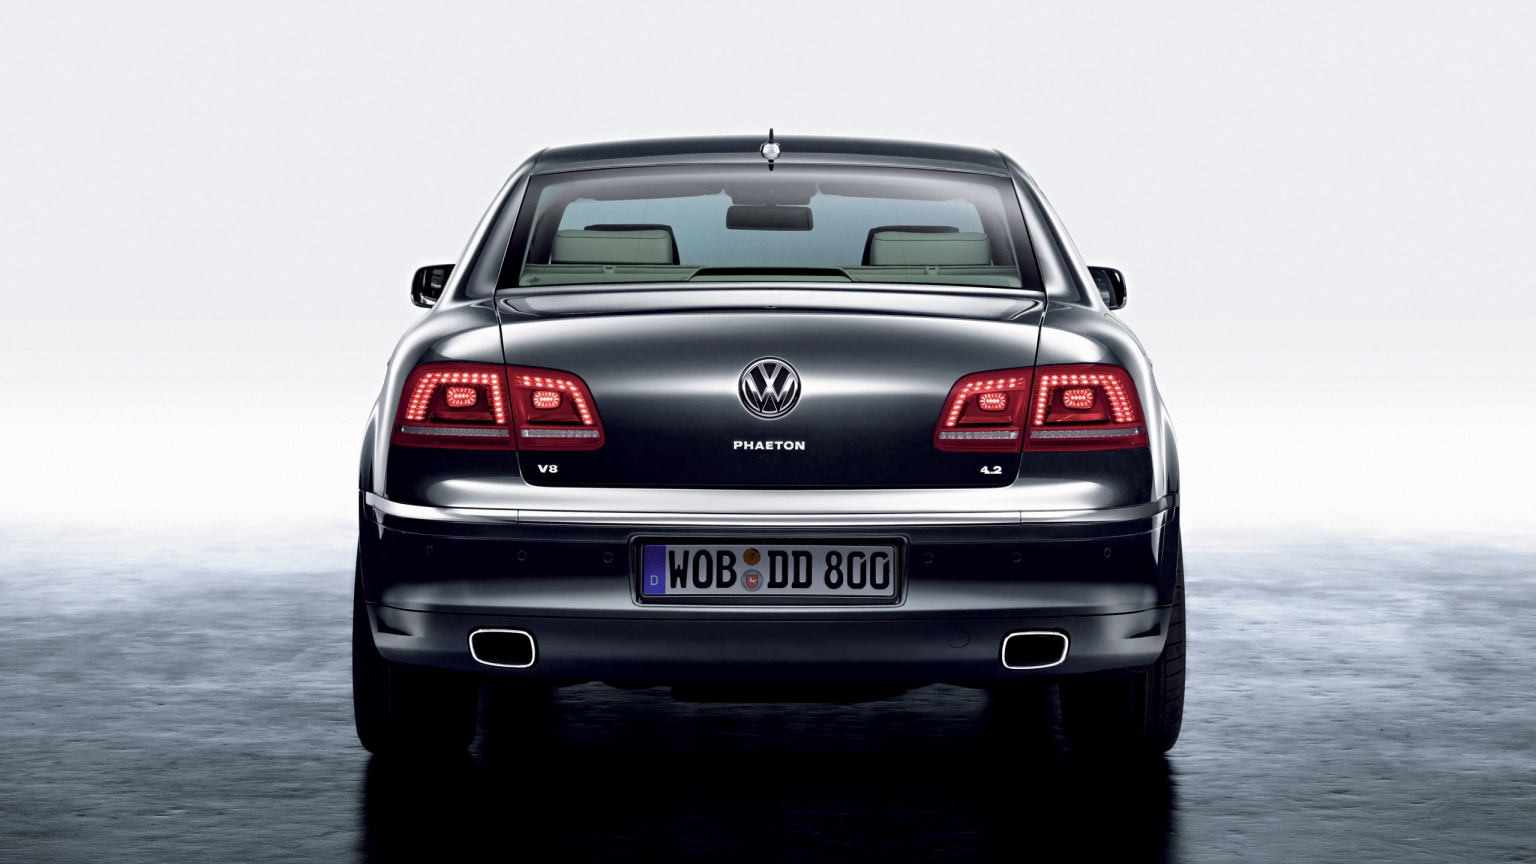 Volkswagen Phaeton Rear for 1536 x 864 HDTV resolution